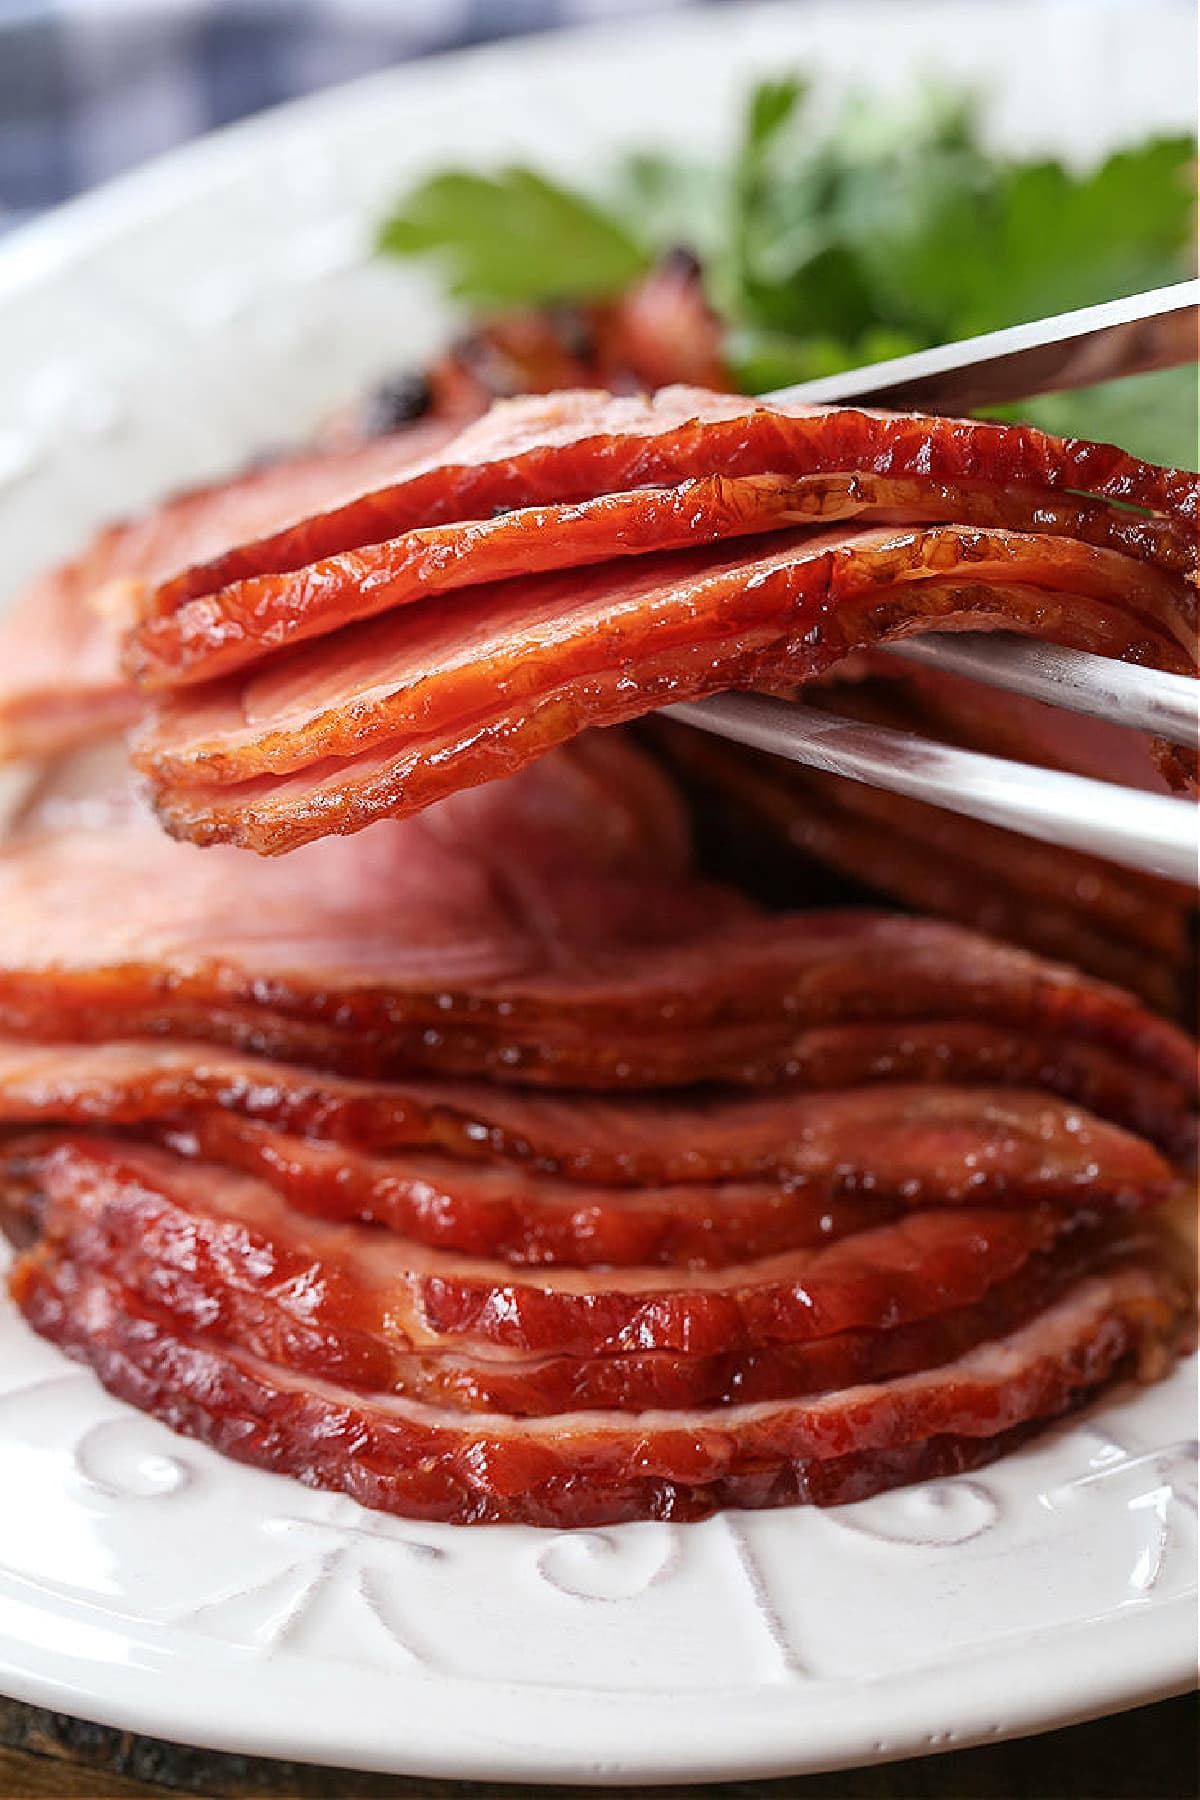 slices of ham on serving platter with serving forks